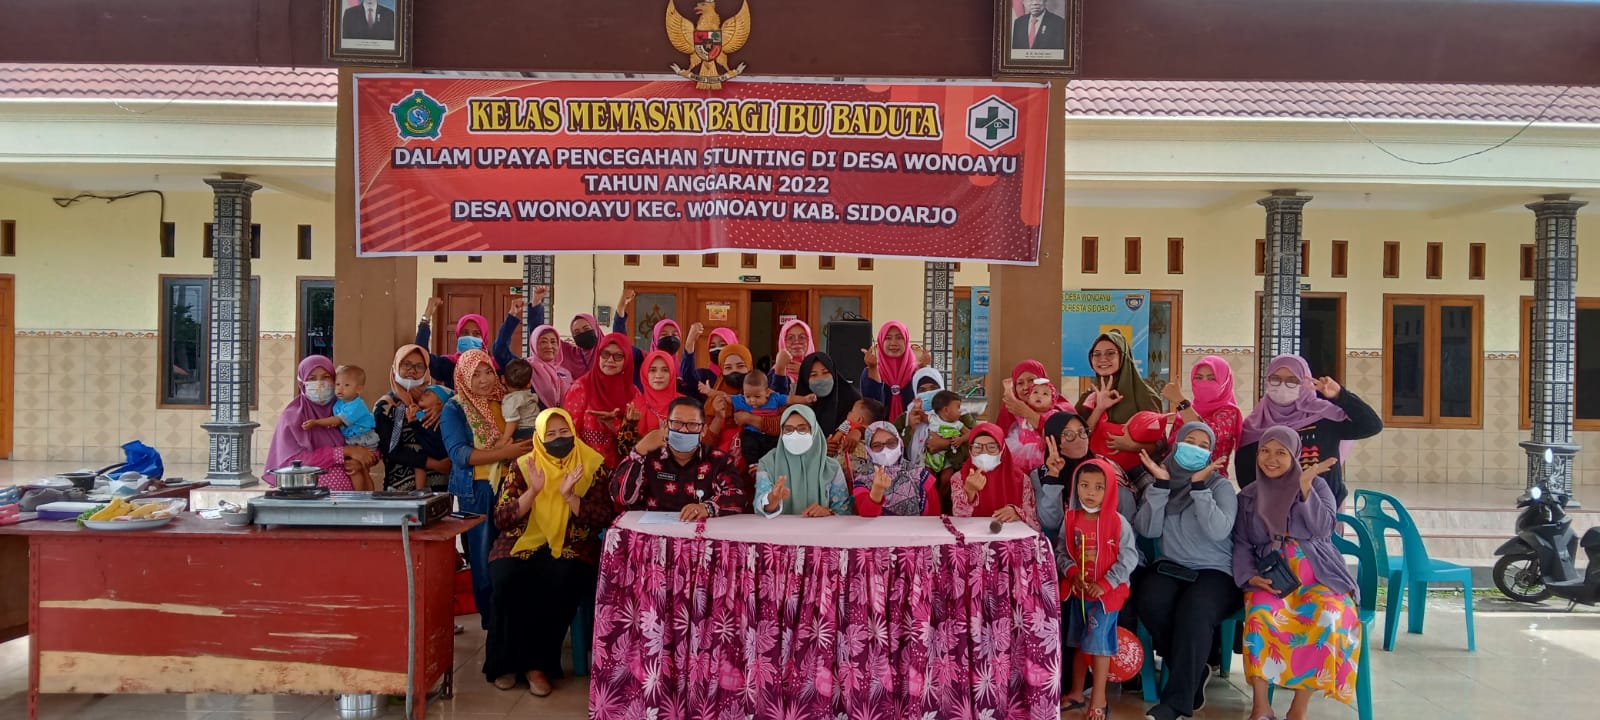 Kader Posyandu Berikan Kelas Memasak Bagi Ibu Baduta (Balita dibawah Usia 2 Tahun)